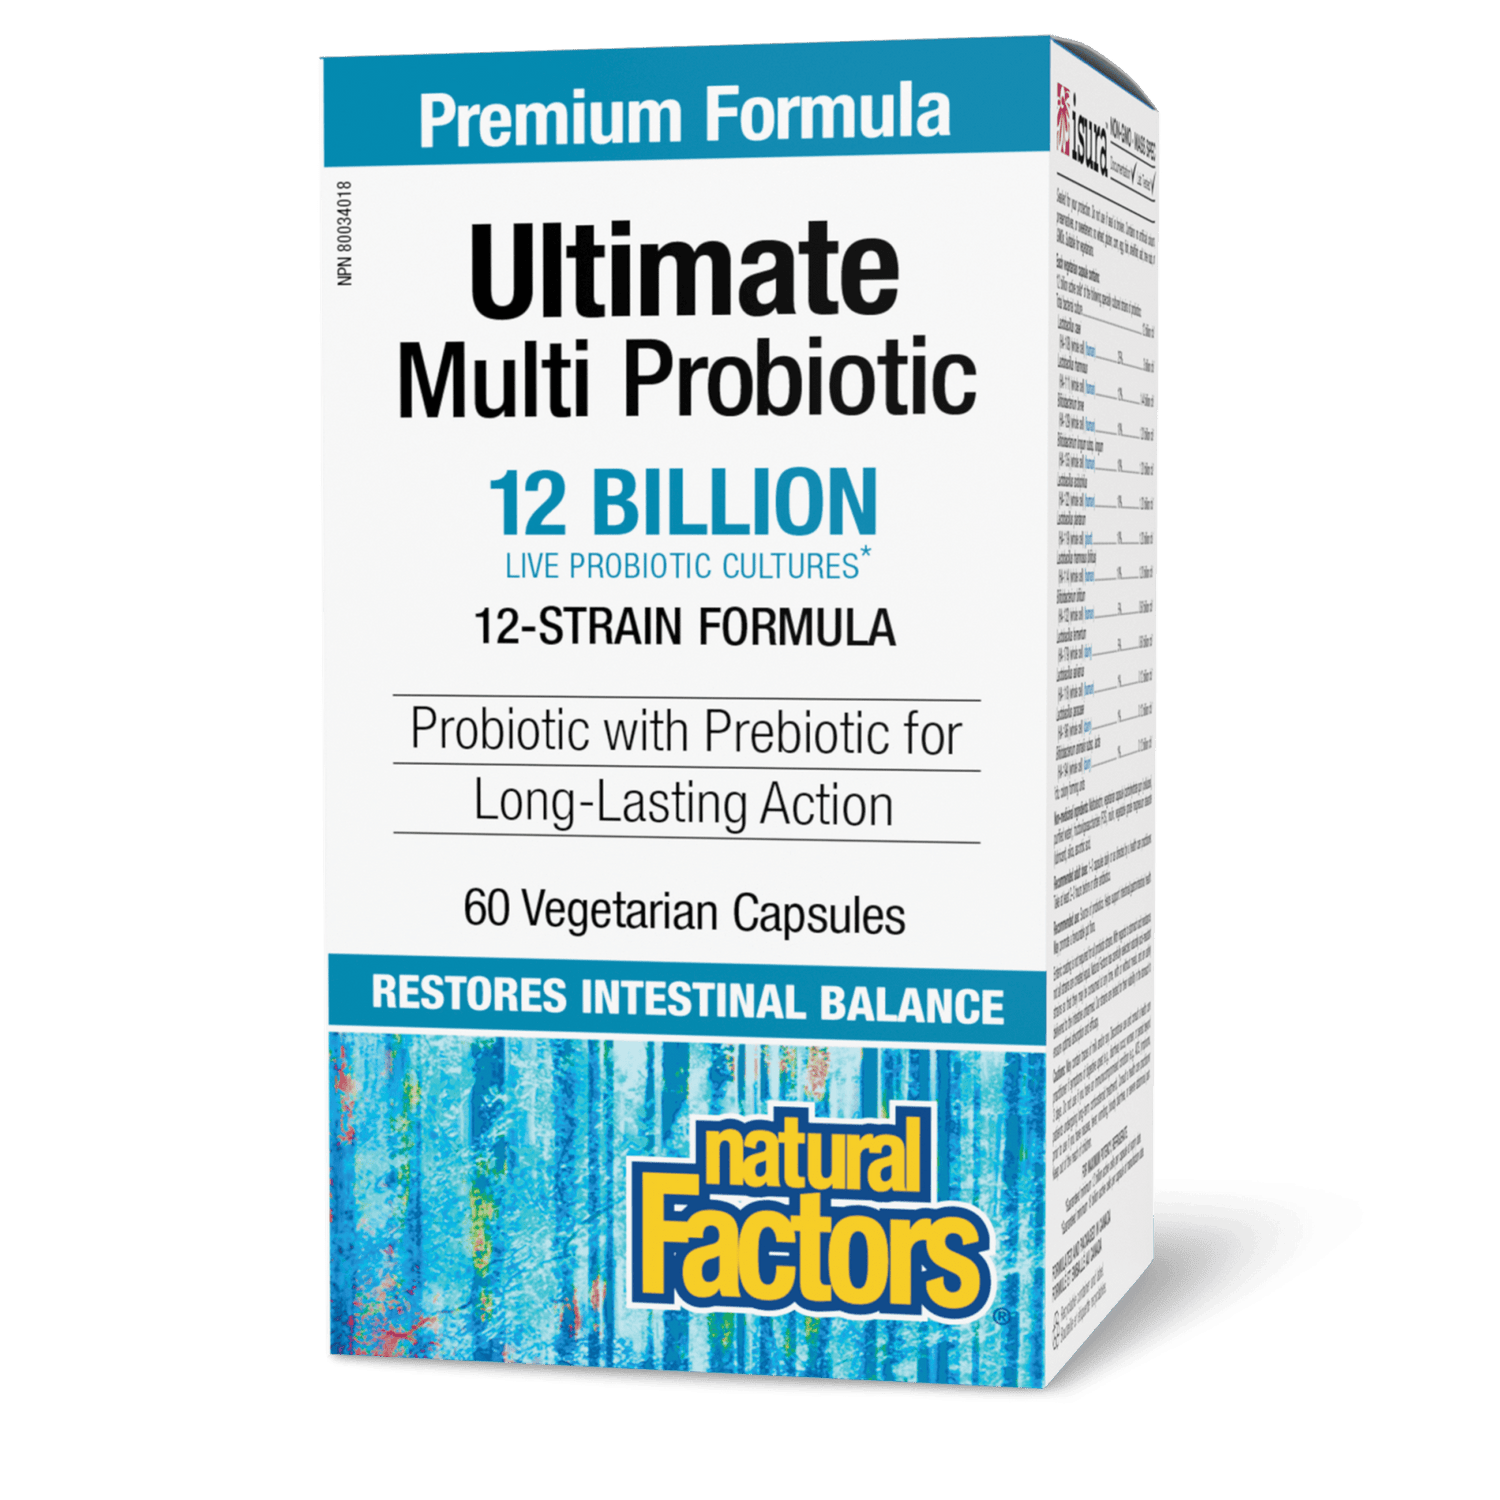 Ultimate Multi Probiotic 12 Billion Live Probiotic Cultures, Natural Factors|v|image|1847